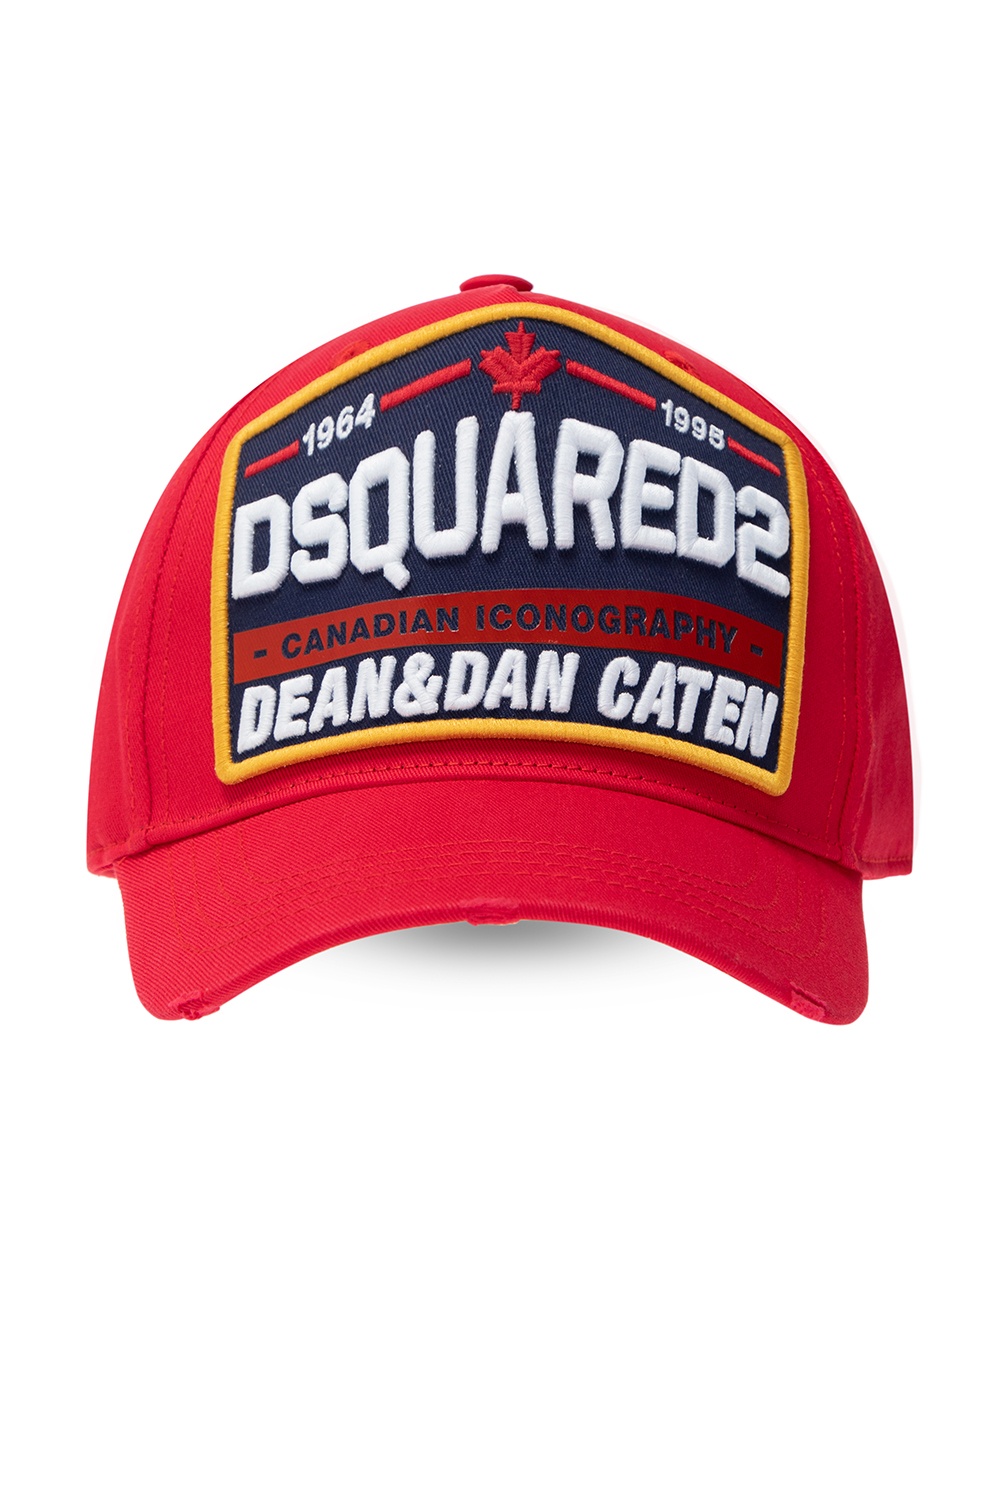 dsquared red cap